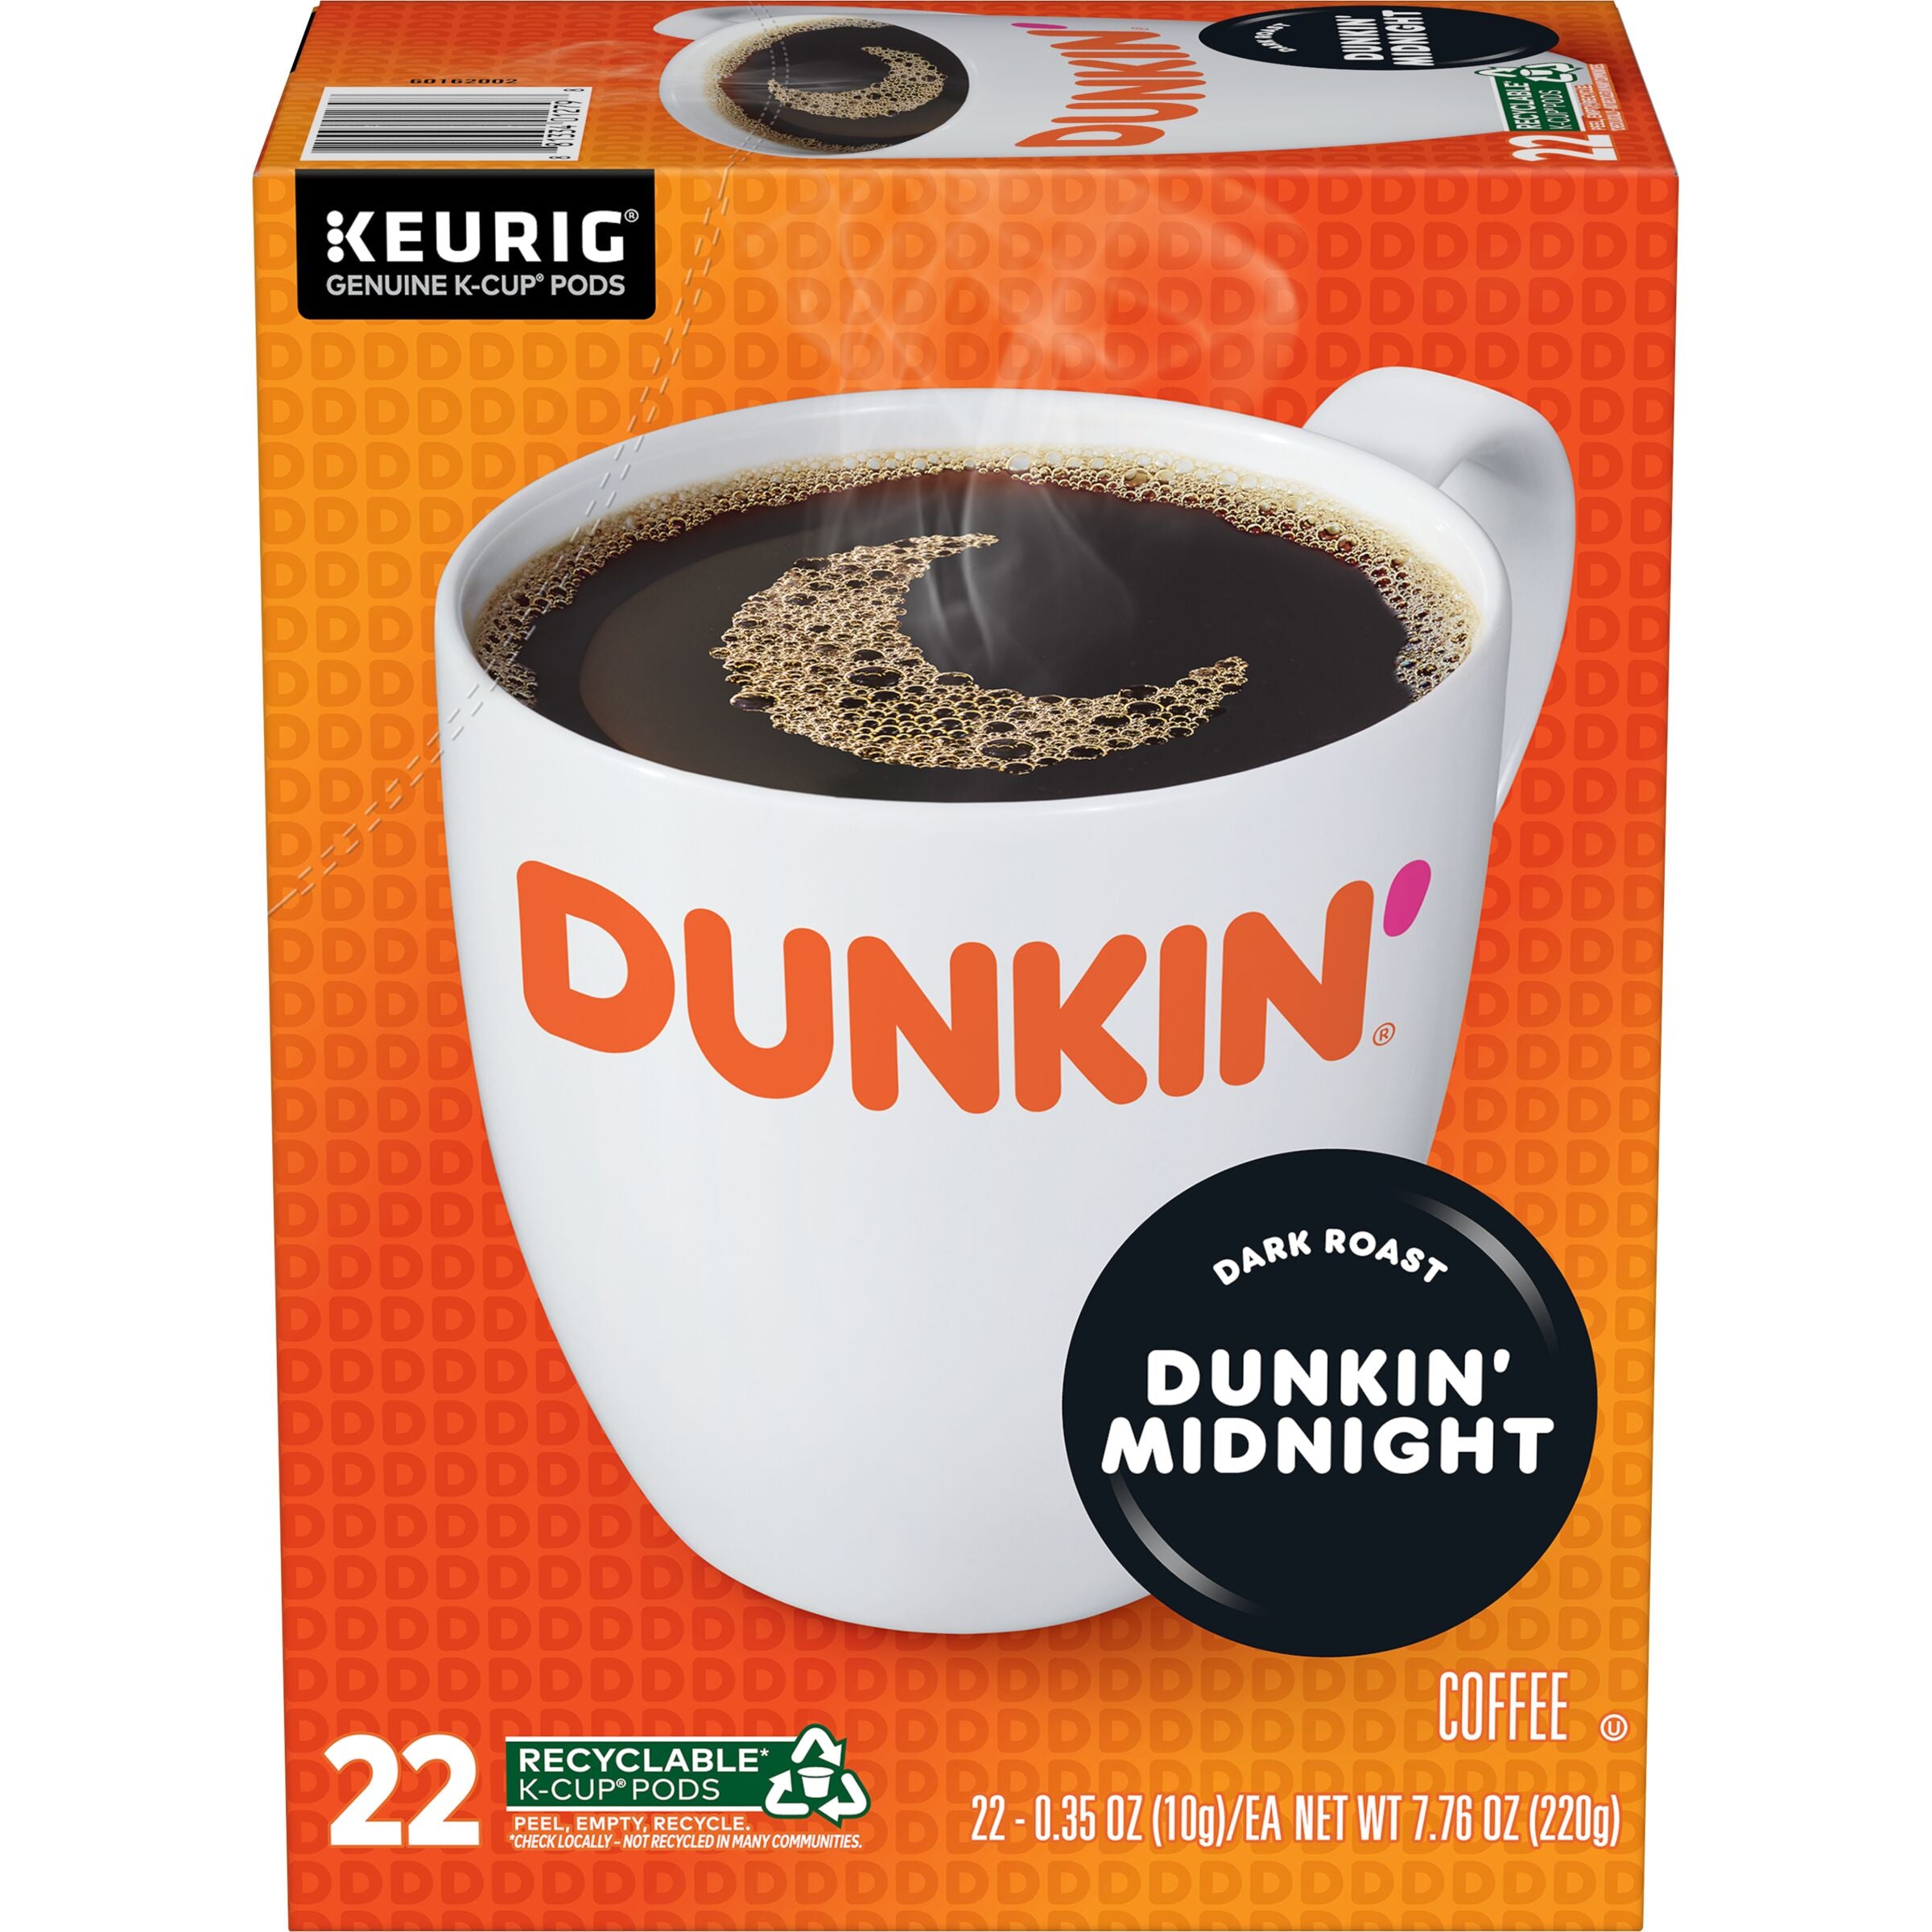 Dunkin' Midnight Dark Roast Coffee, K-Cup Pods